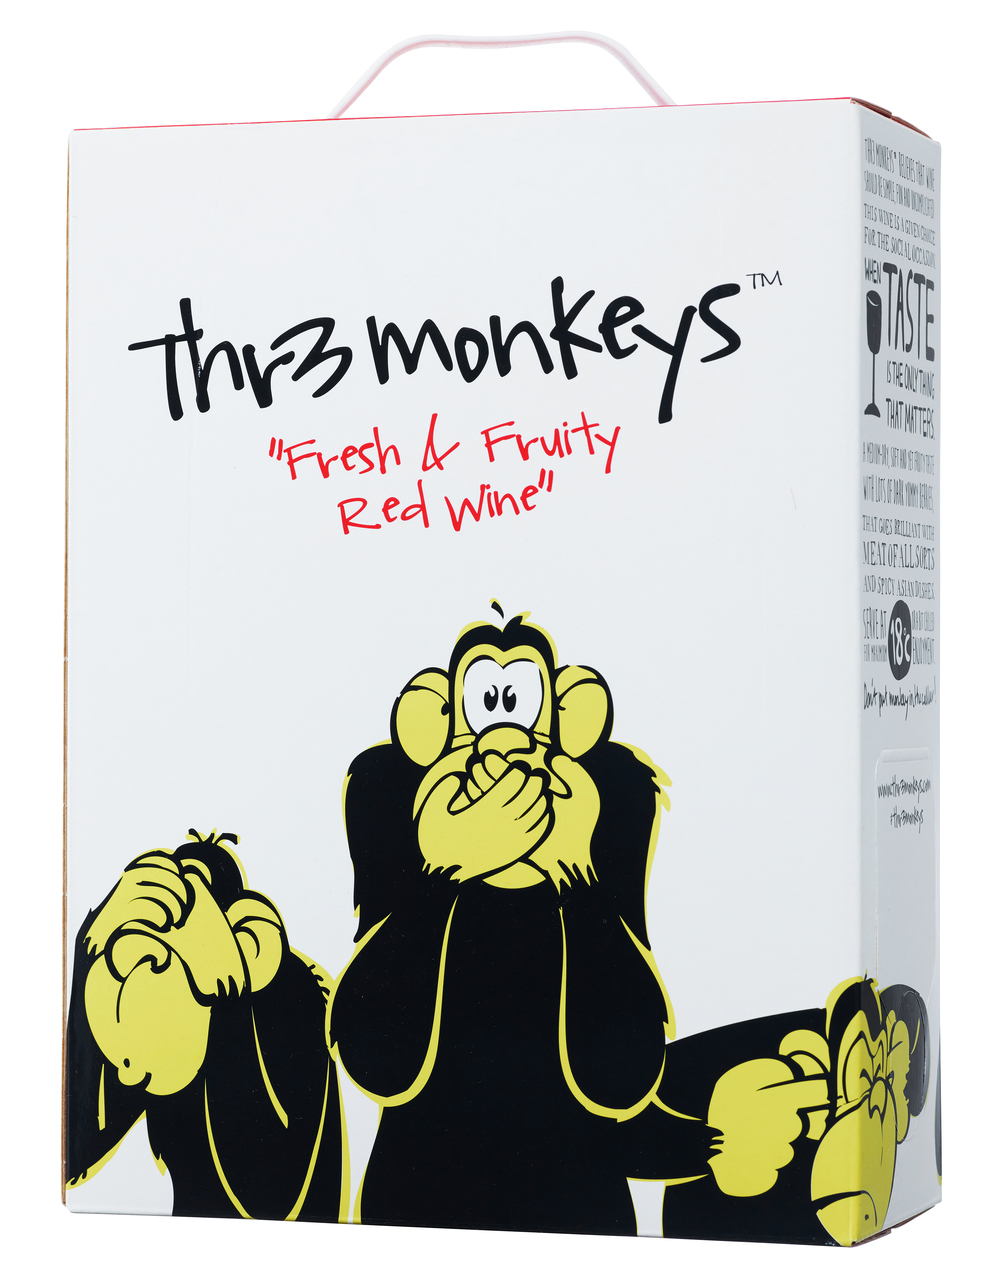 Thr3 Monkeys Red